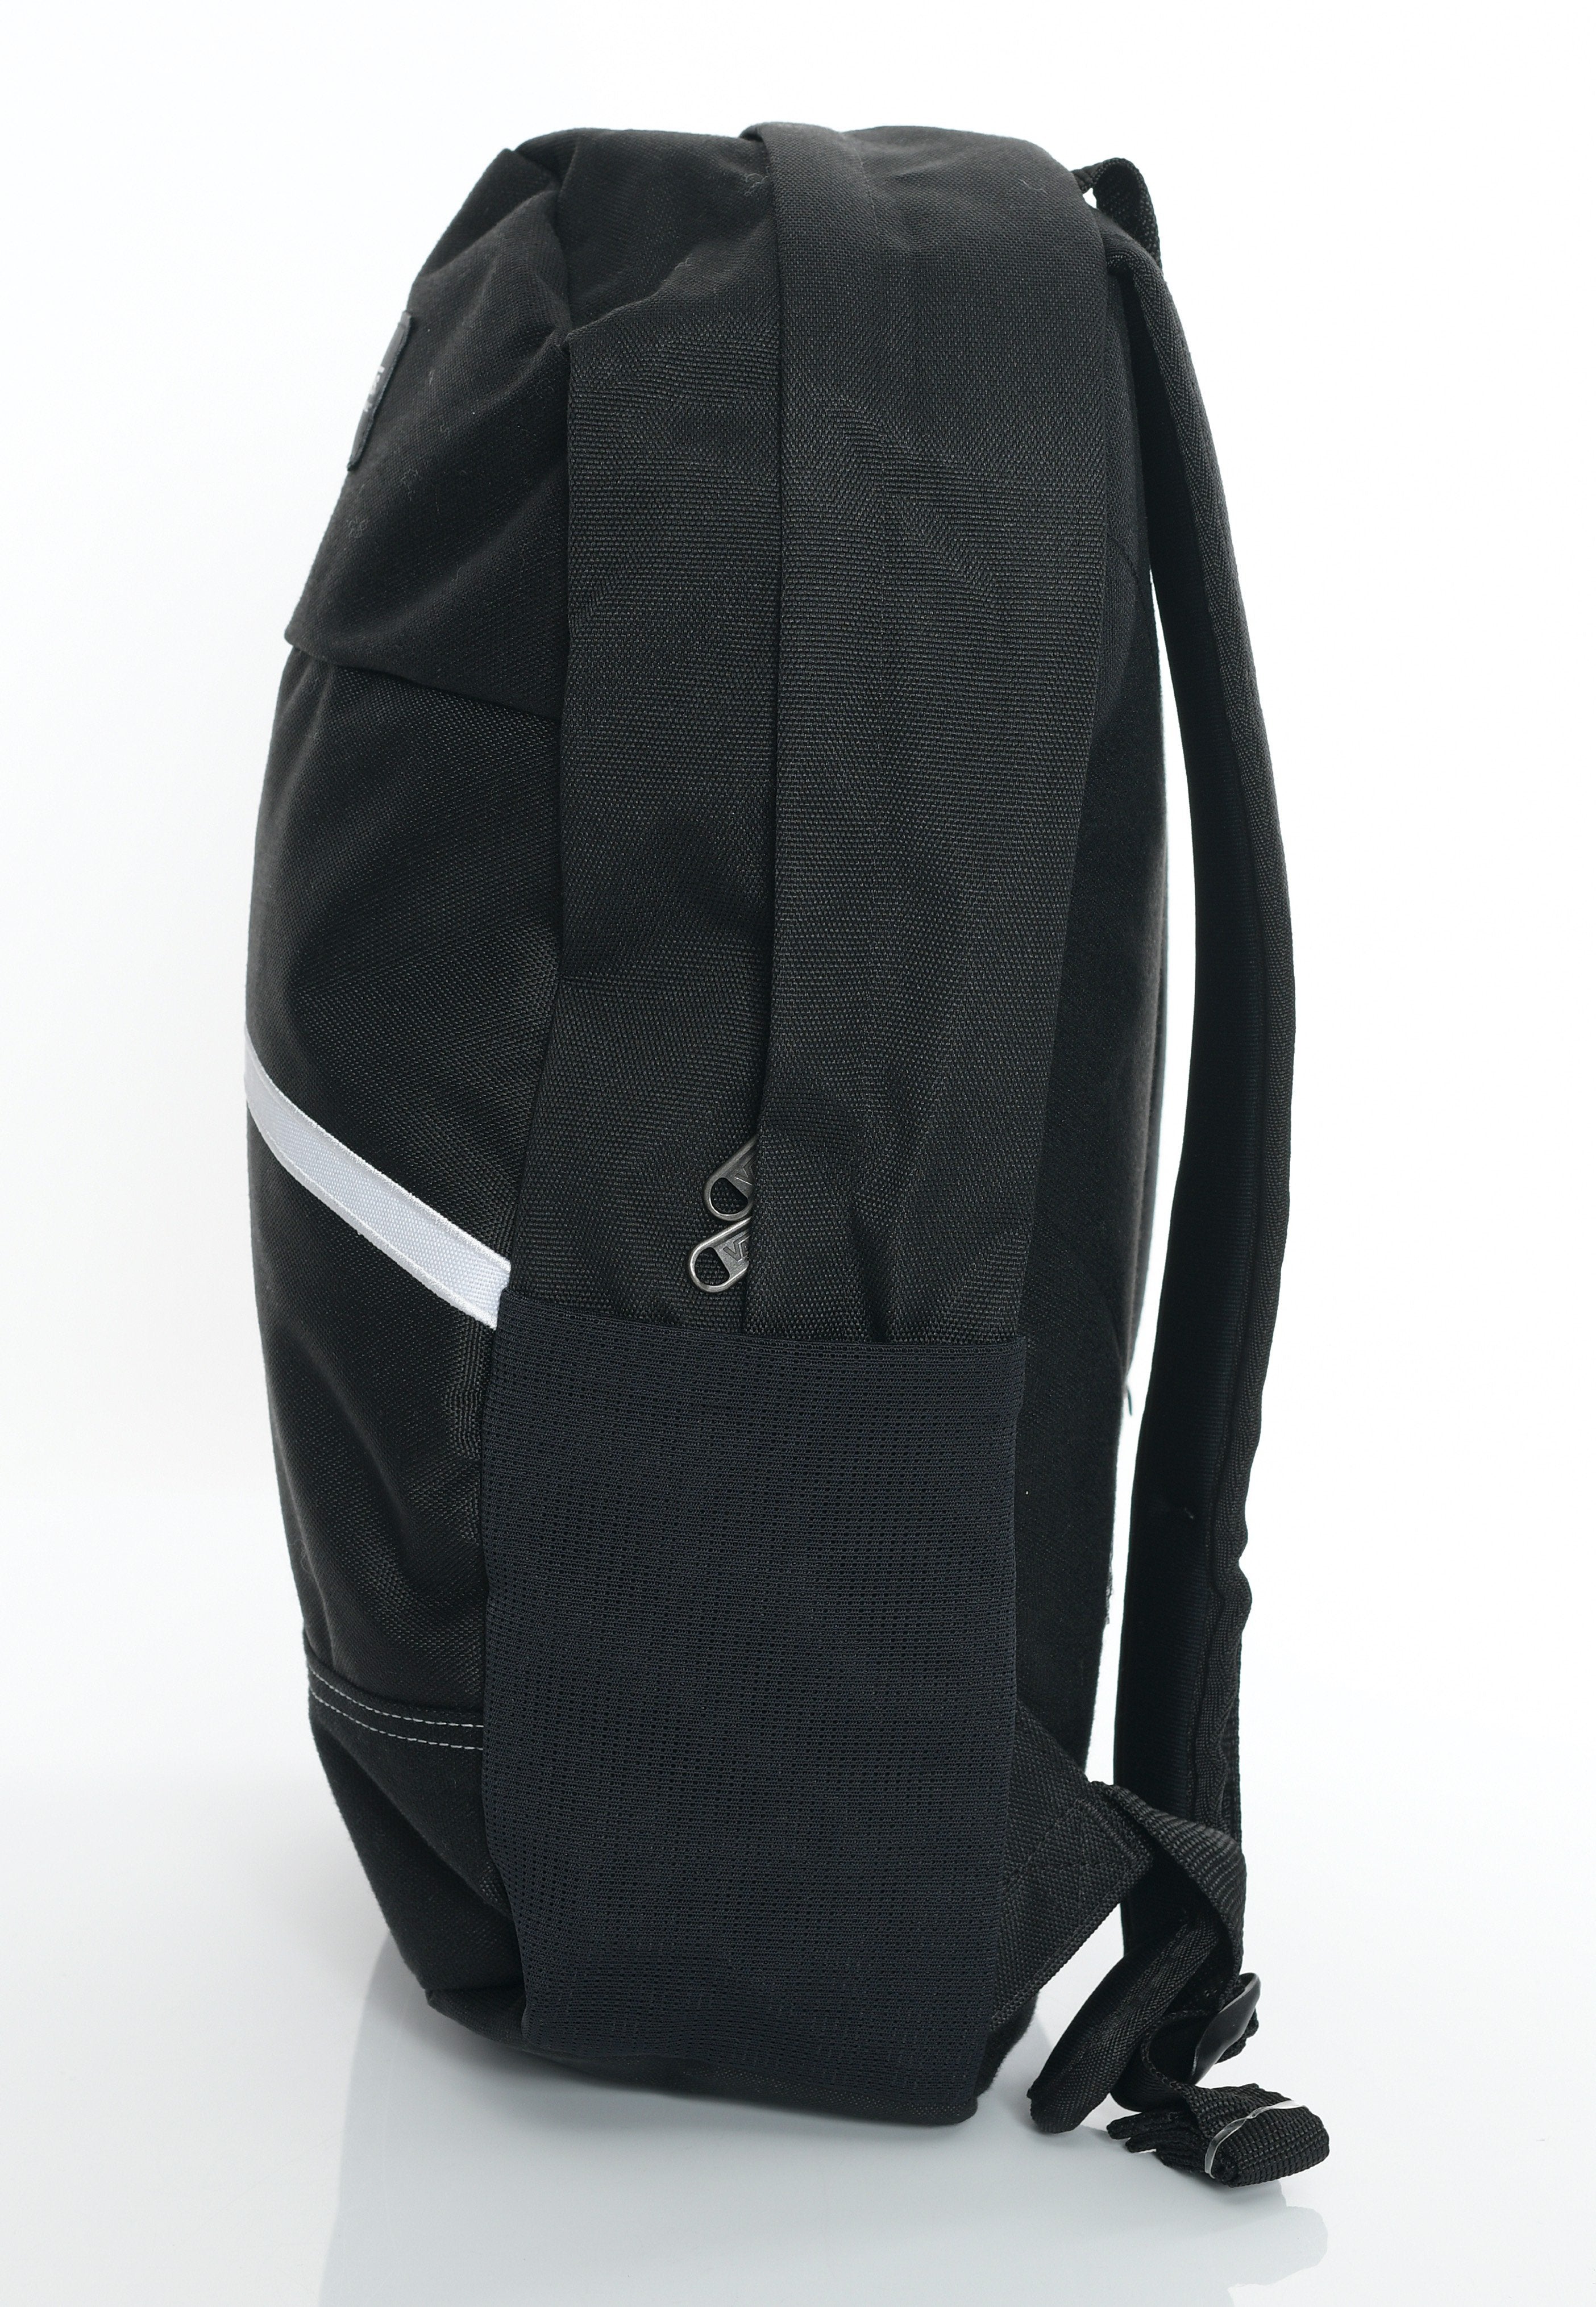 Vans - Construct Skool Black/White - Backpack